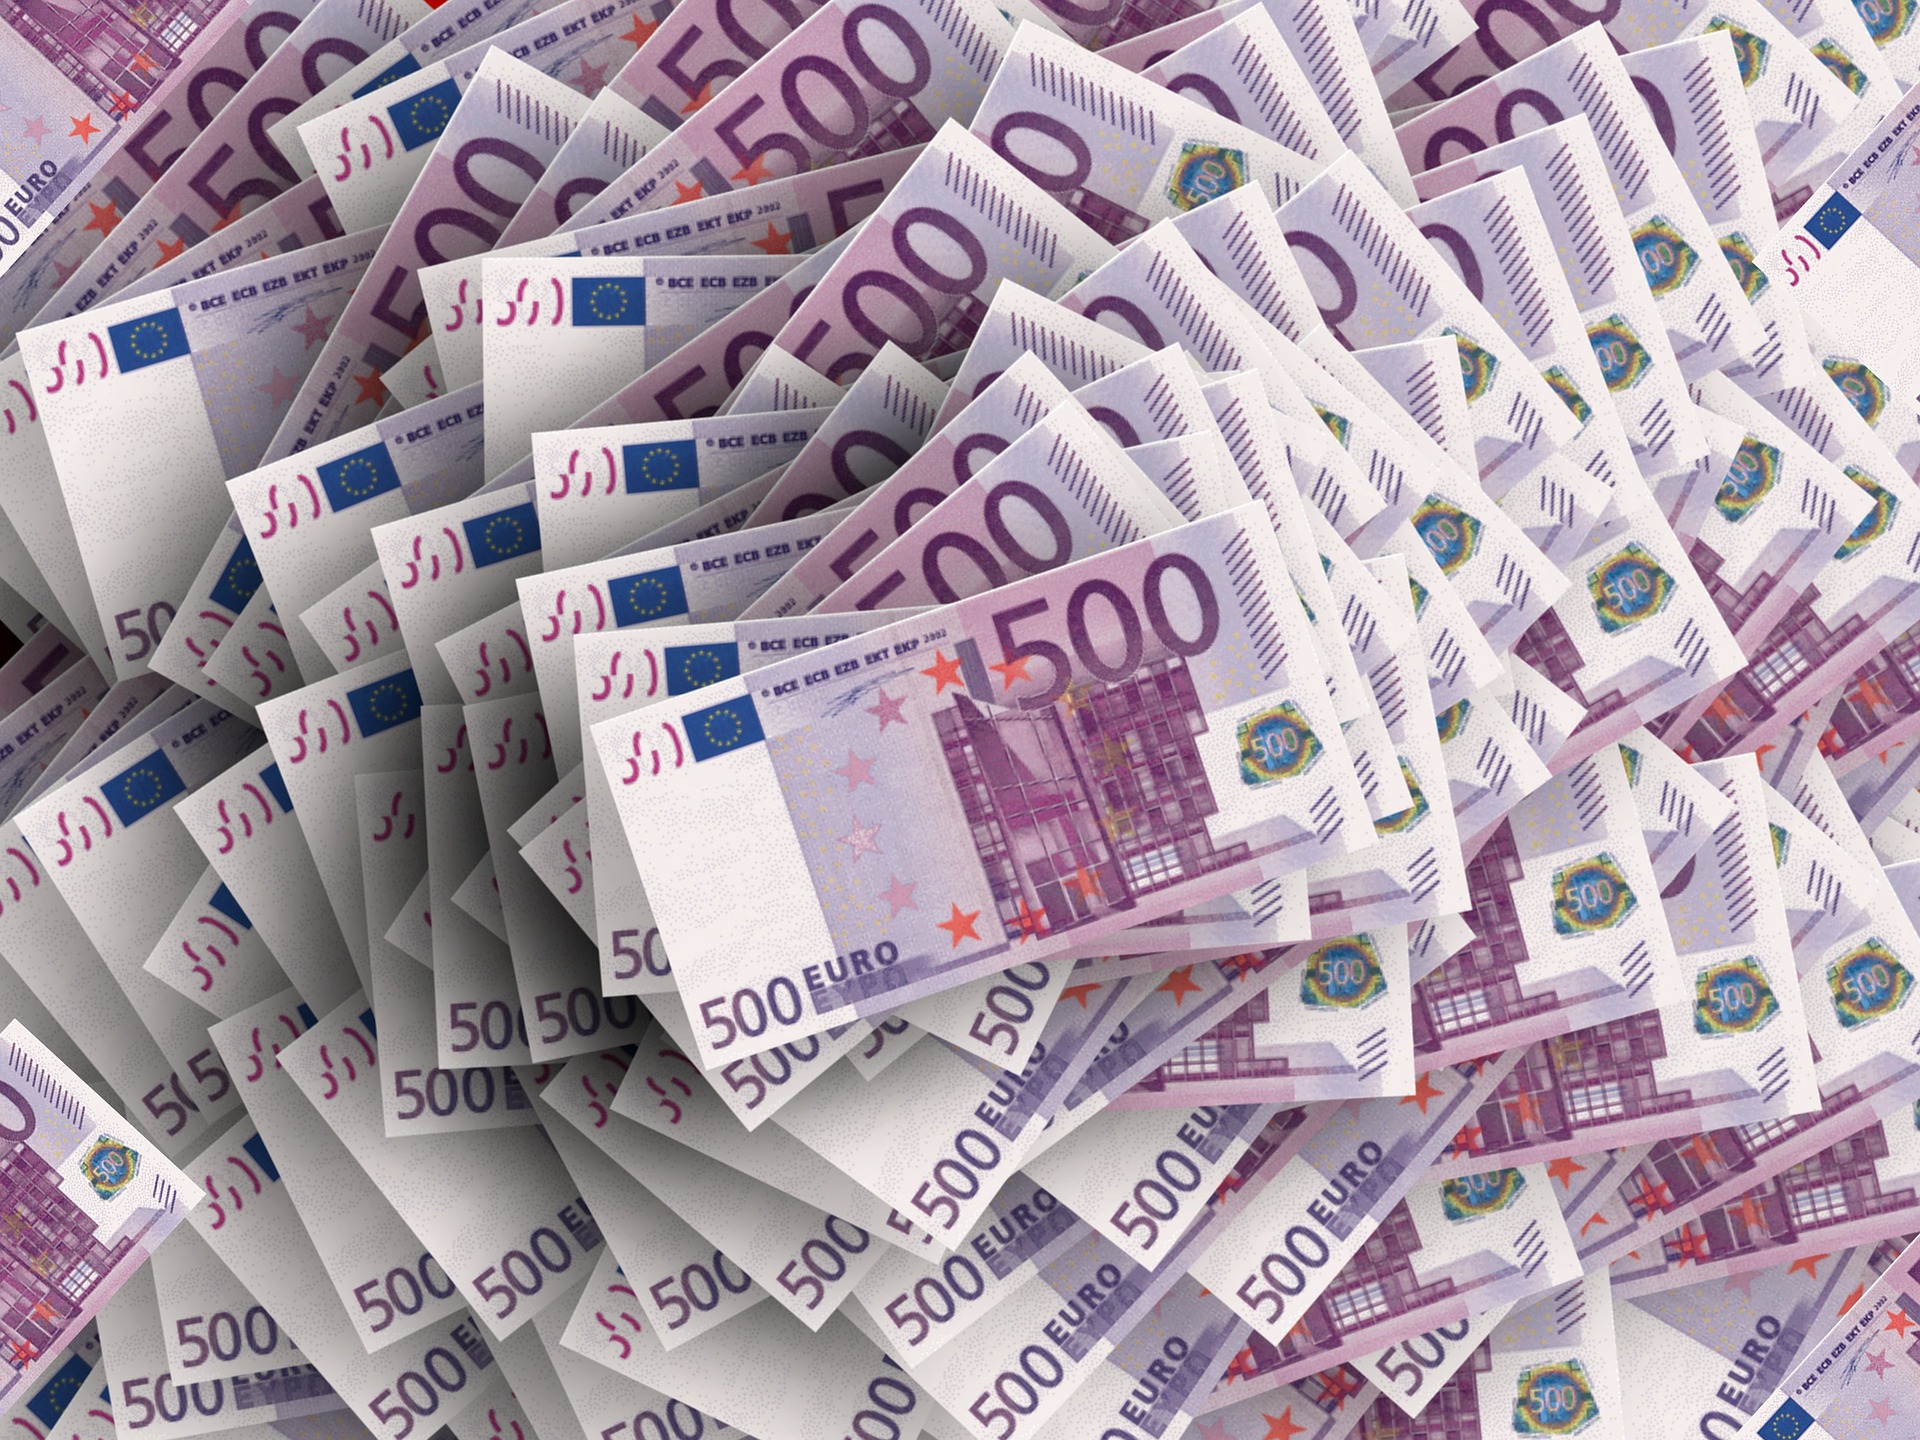 Forderungen über 100.000 Euro können im Insolvenzverfahren geltend gemacht werden